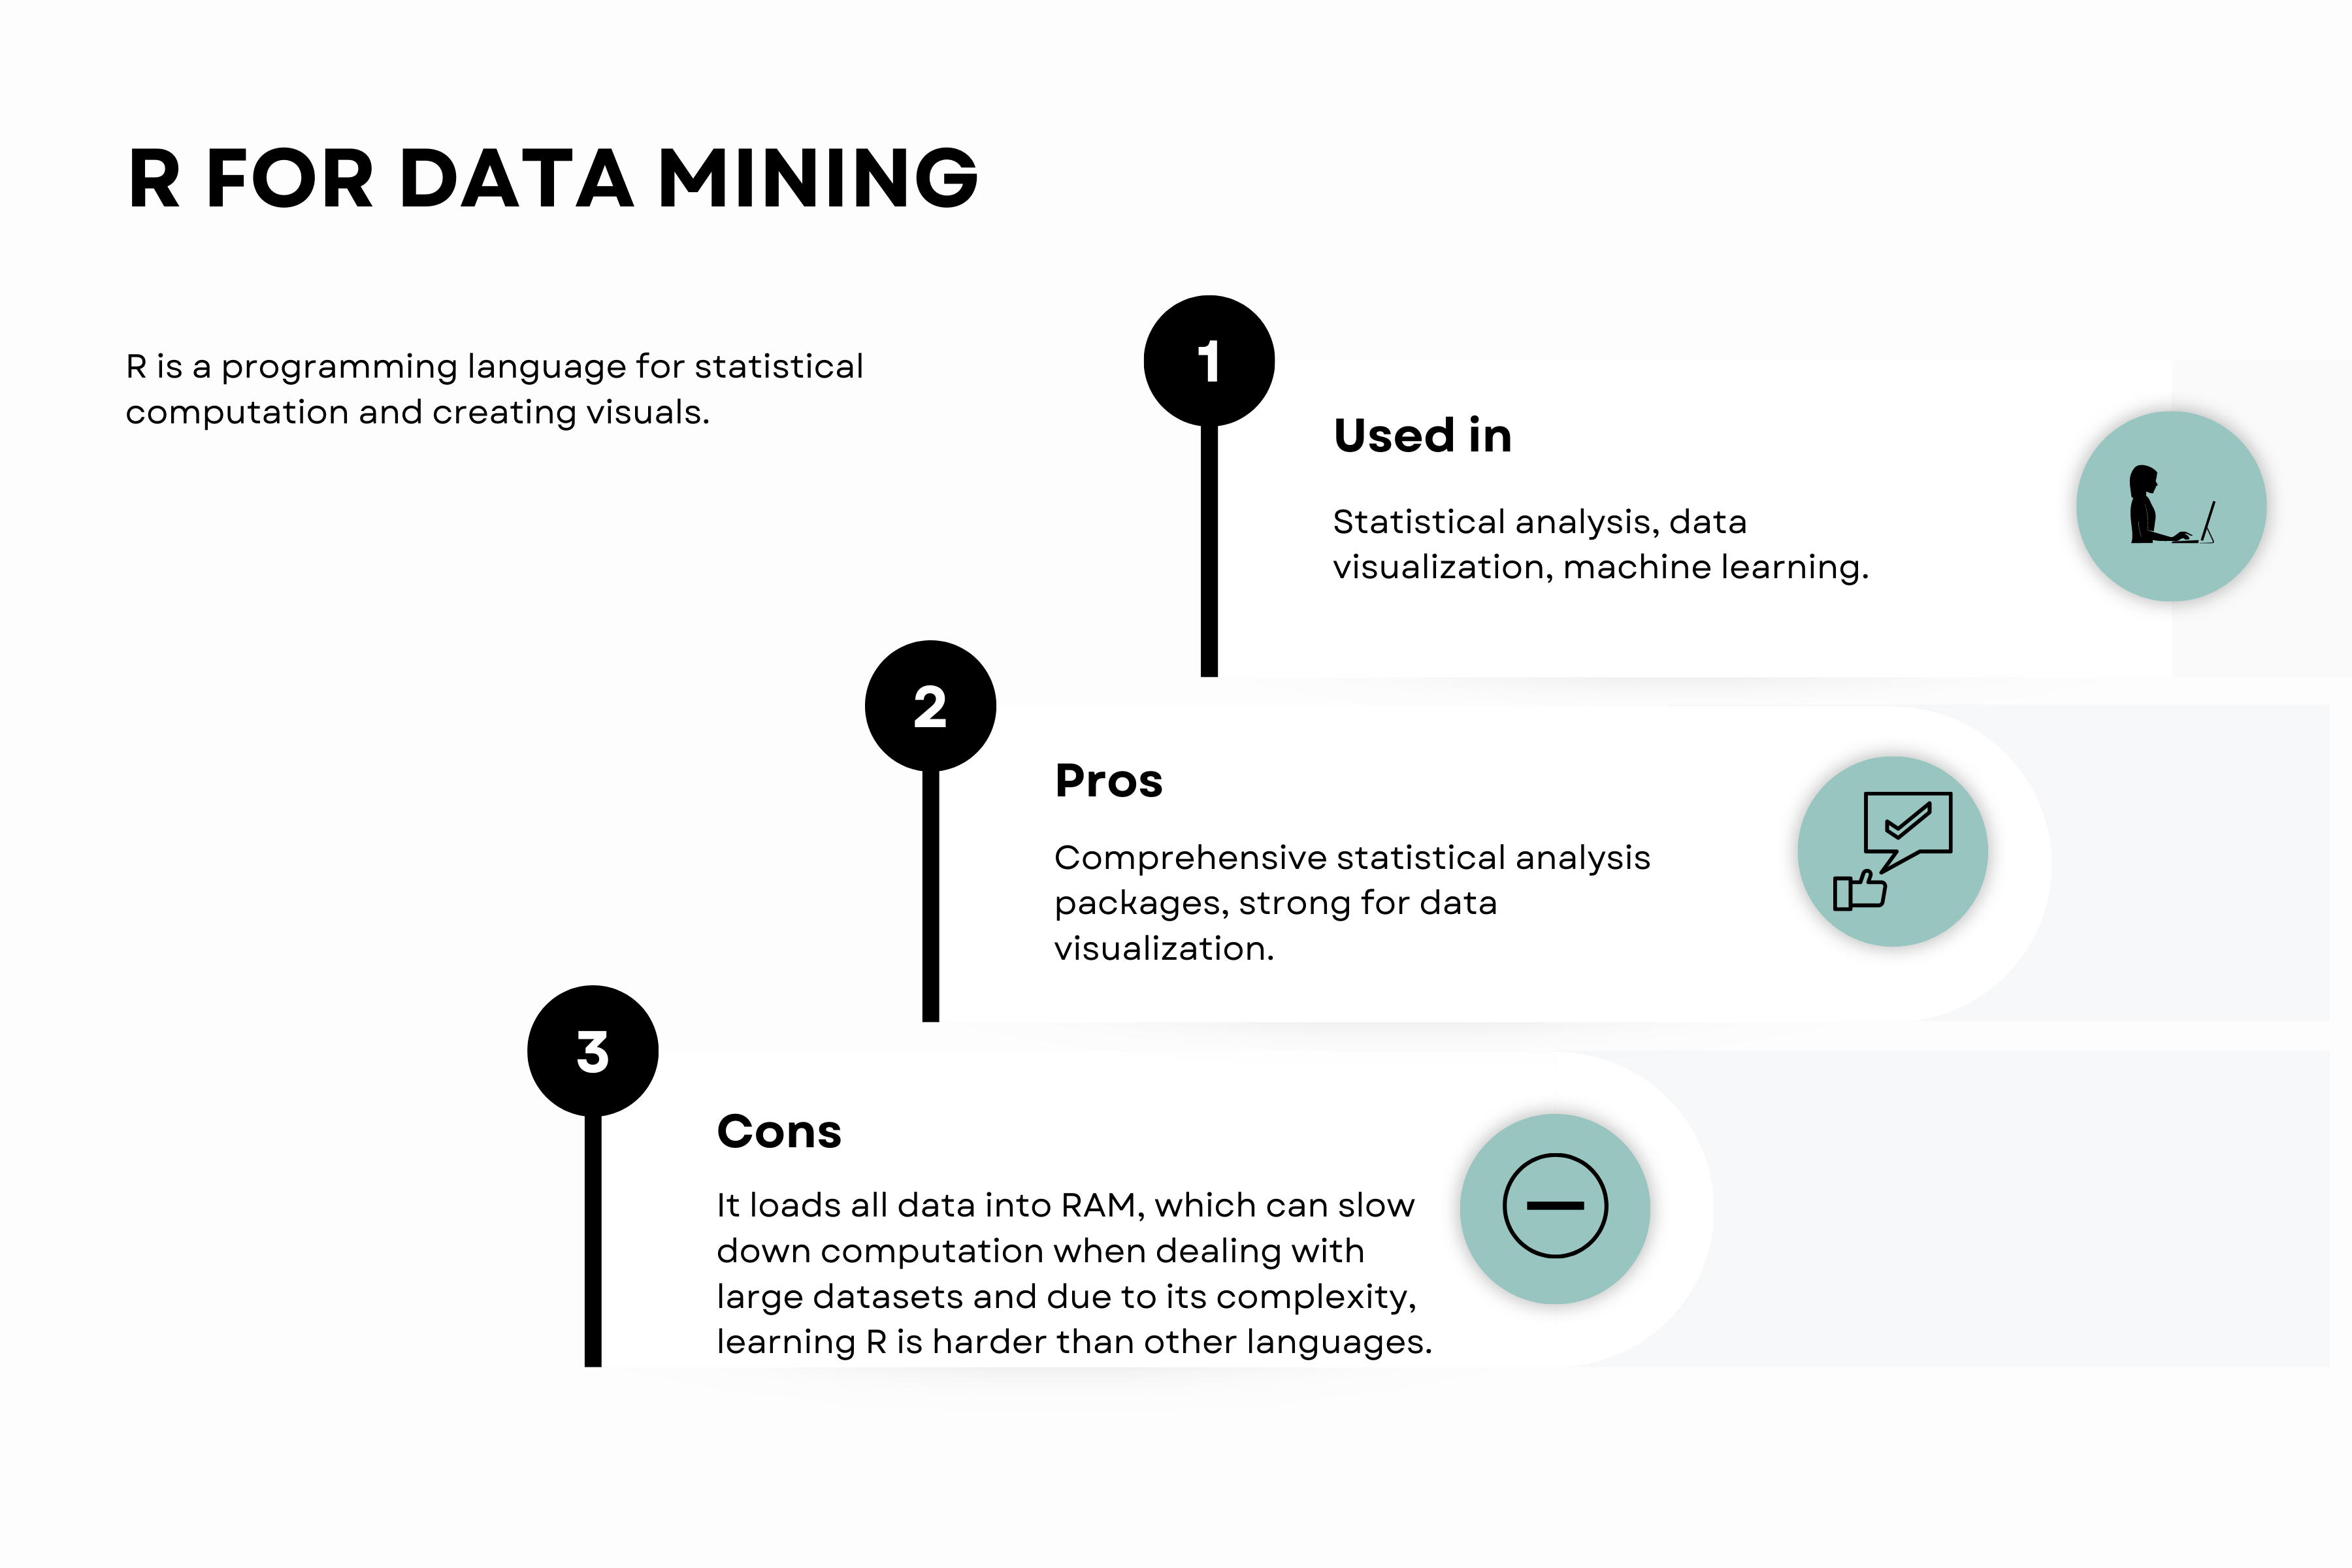 R for data mining